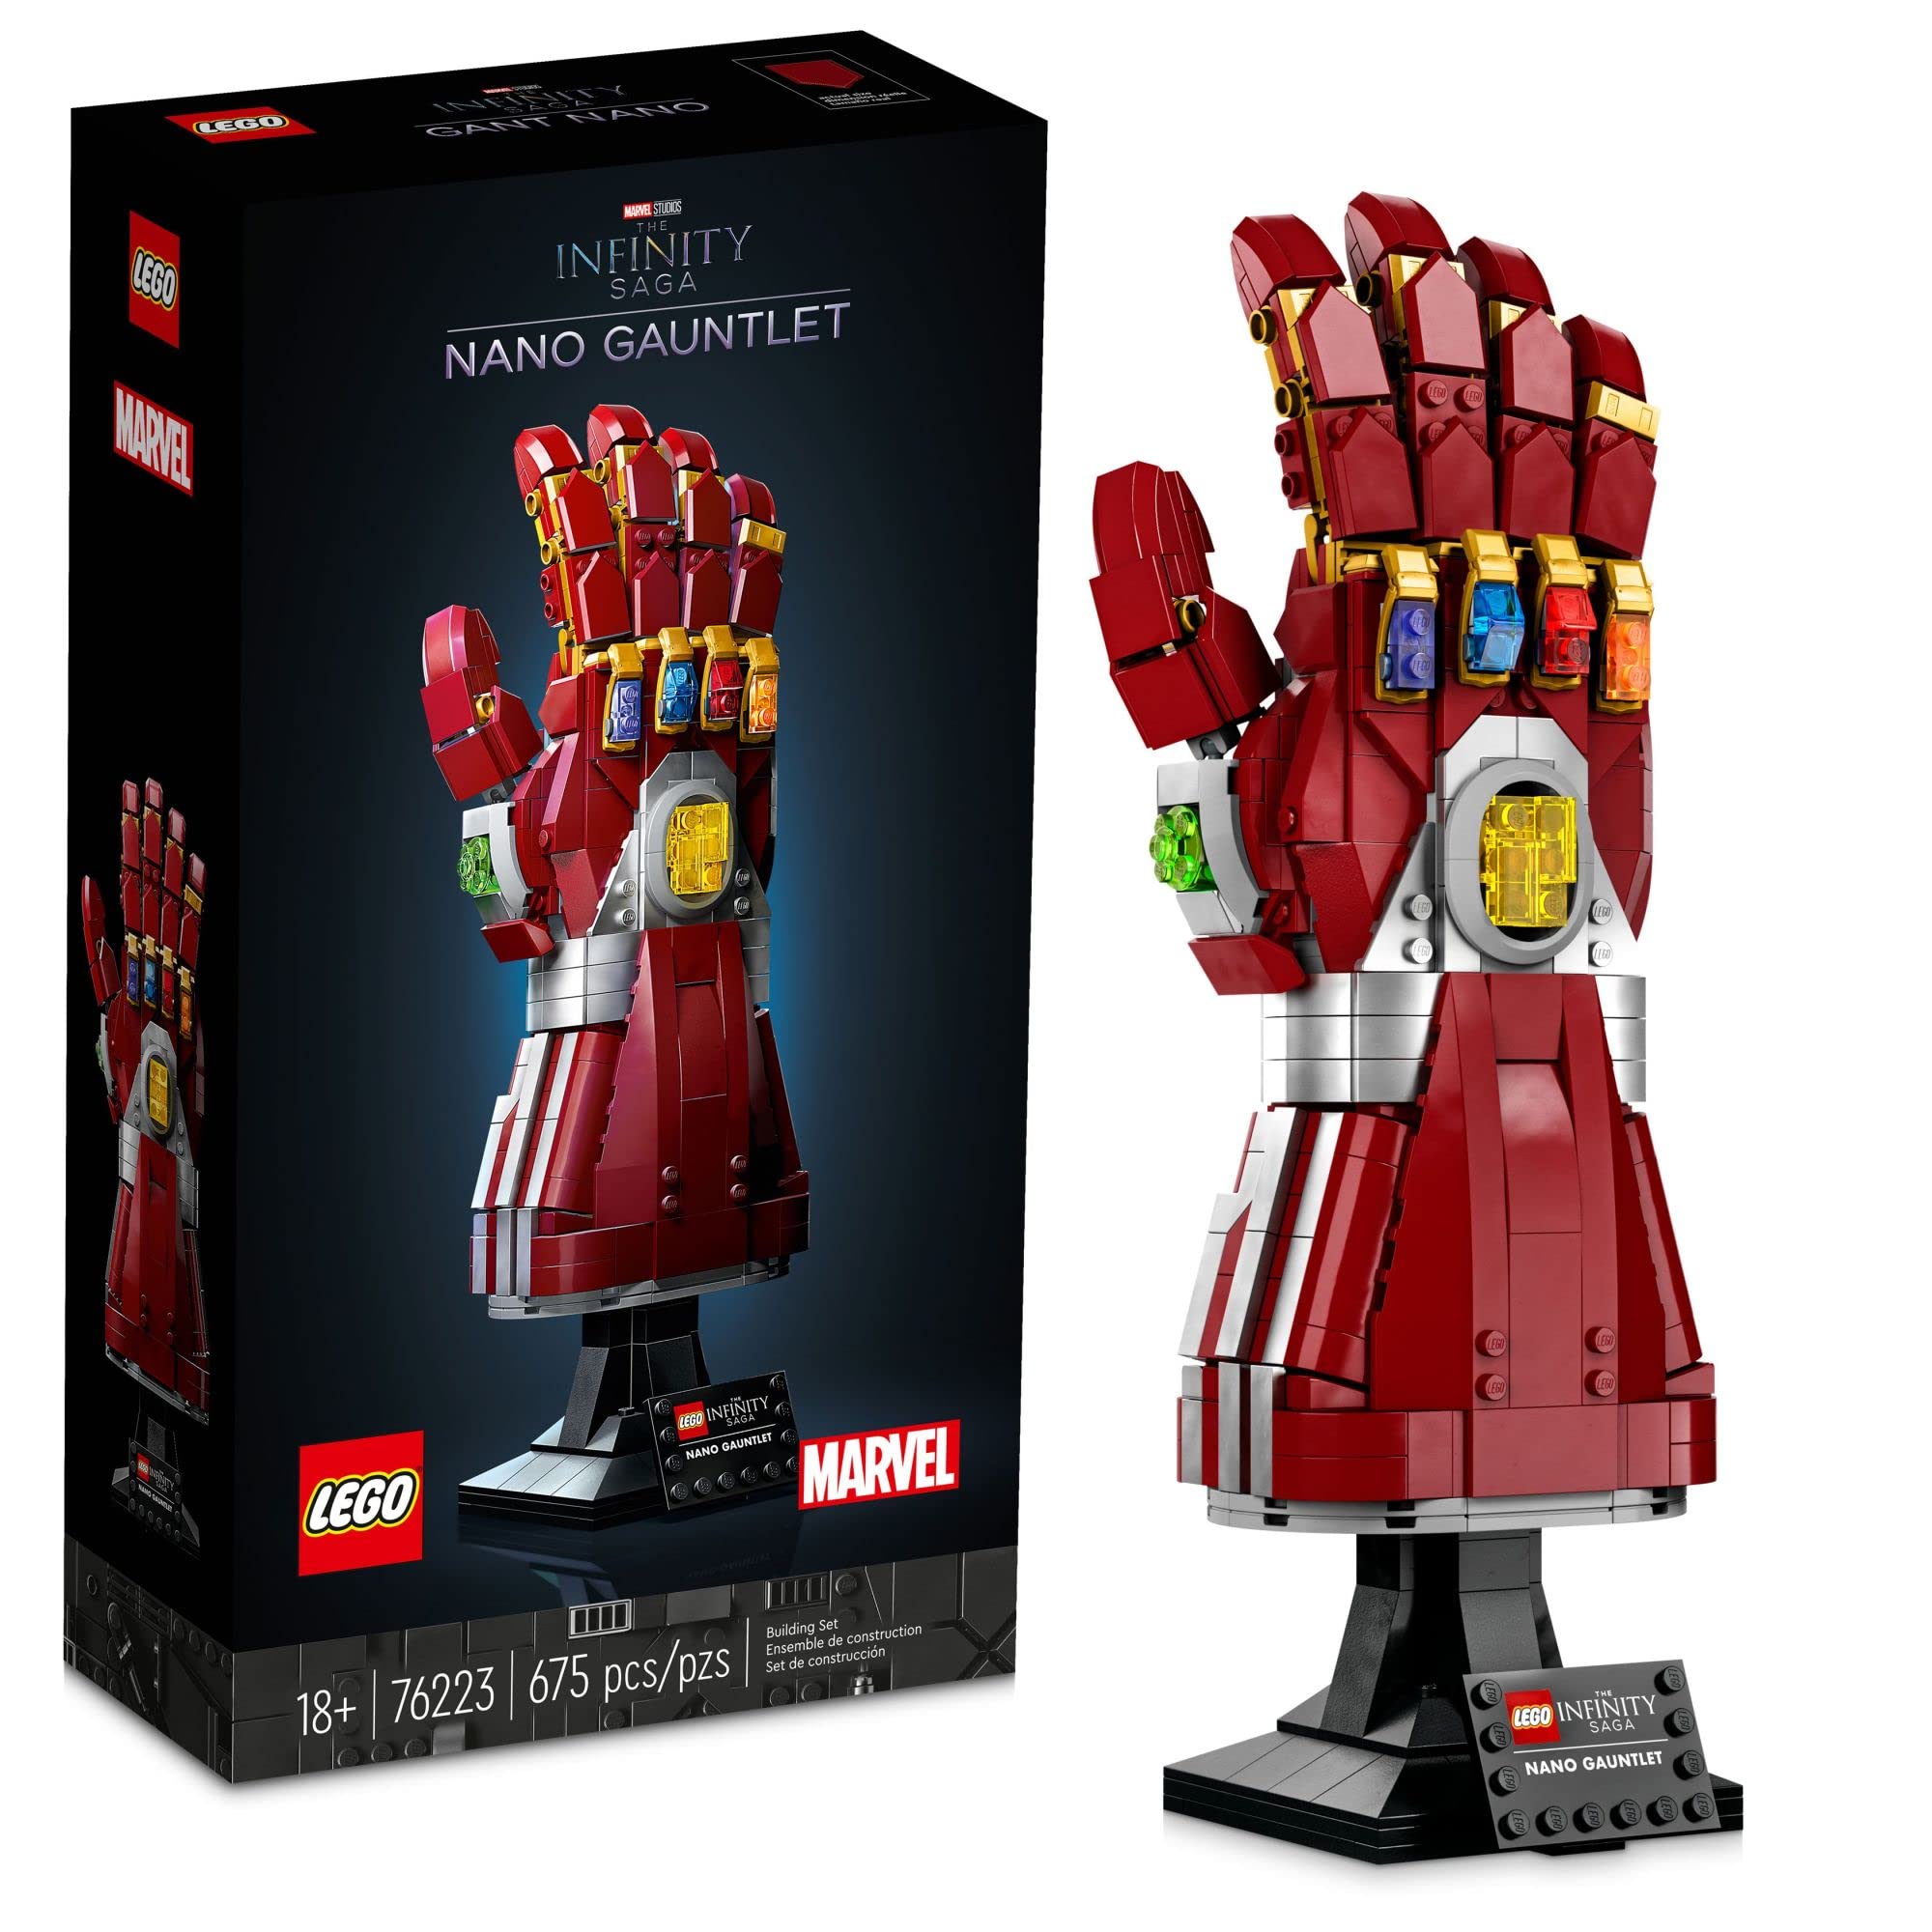 LEGO Набор Marvel Nano Gauntlet 76223 Iron Man для взрослых (680 деталей)